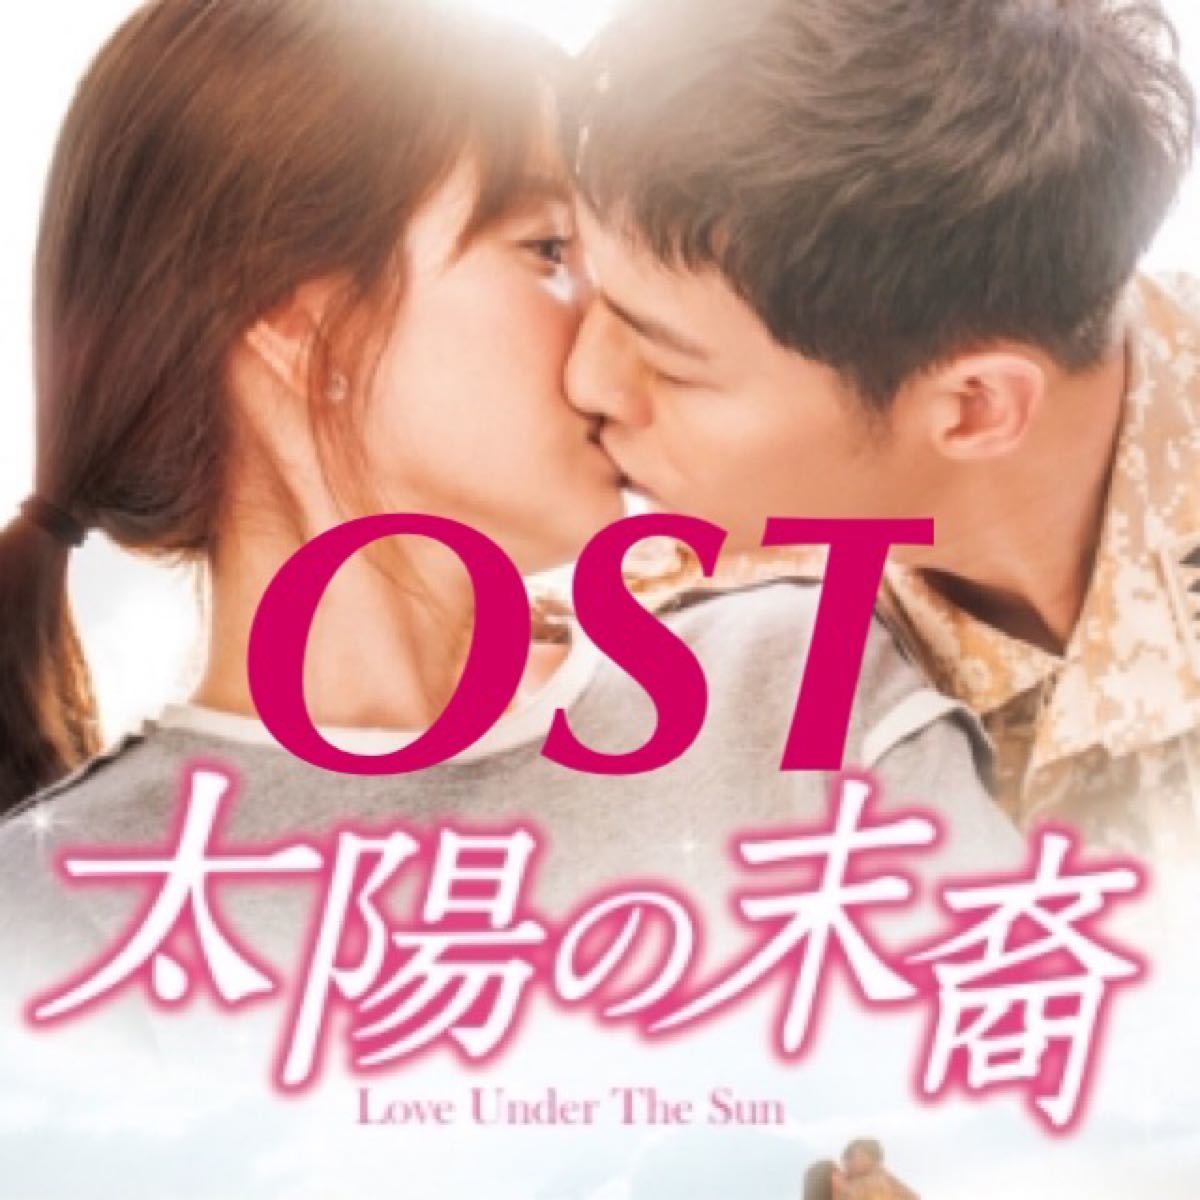 太陽の末裔  OST  DVD  ソン・ジュンギ  ソン・ヘギョ  レーベル有り